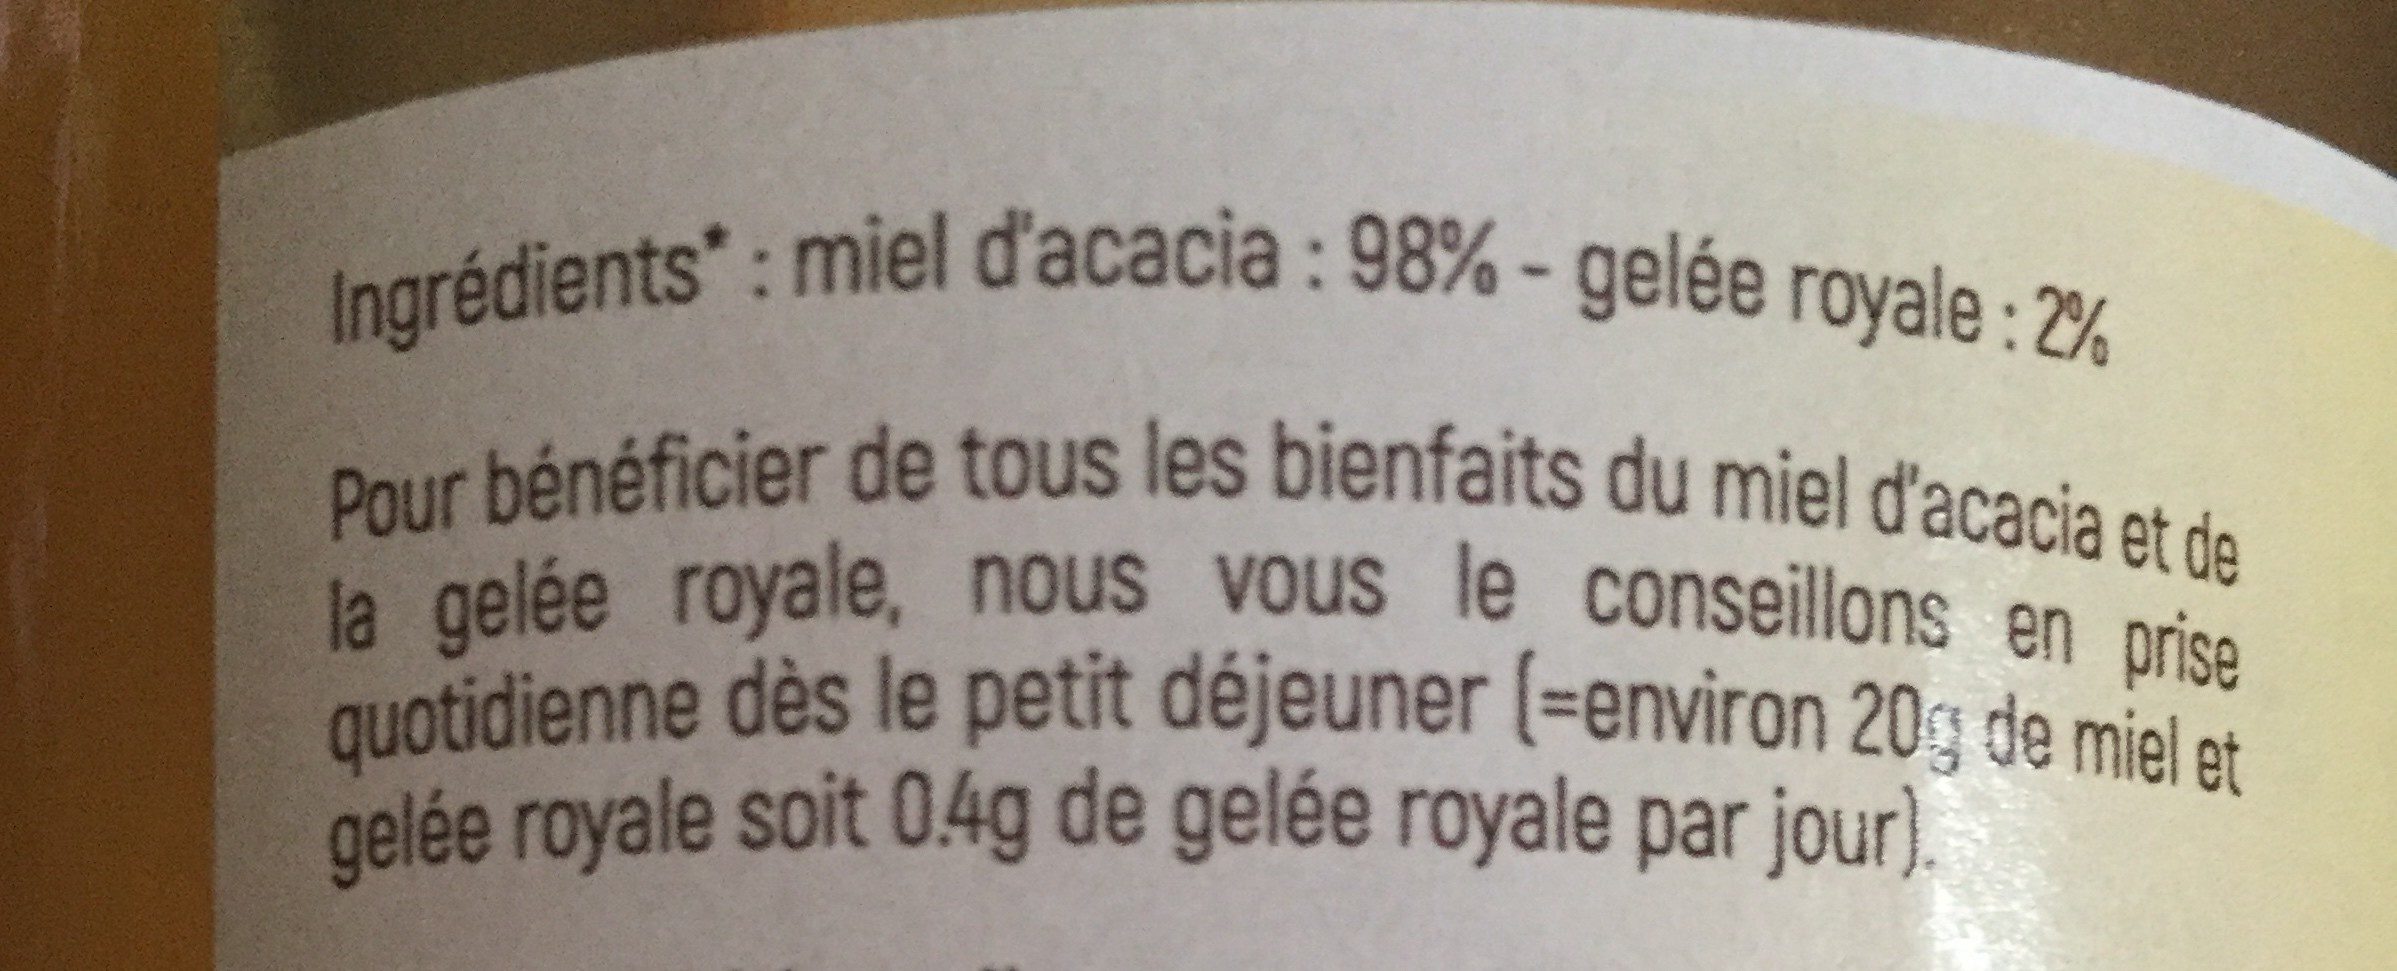 Miel d'acacia et gelée royale - Ingredients - fr